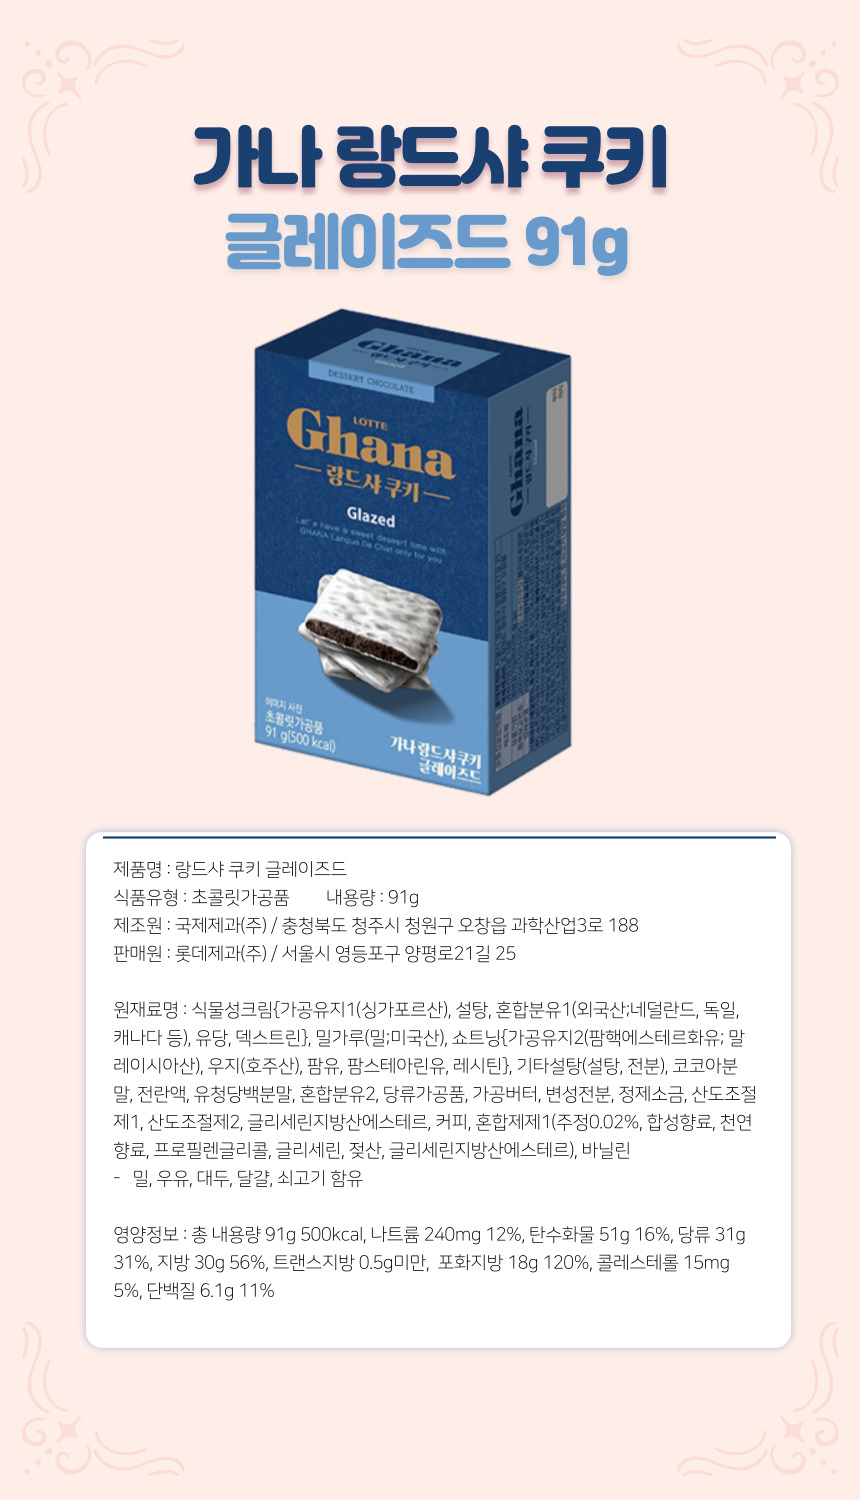 韓國食品-[롯데제과] 가나 랑드샤쿠키 글레이즈드 91g